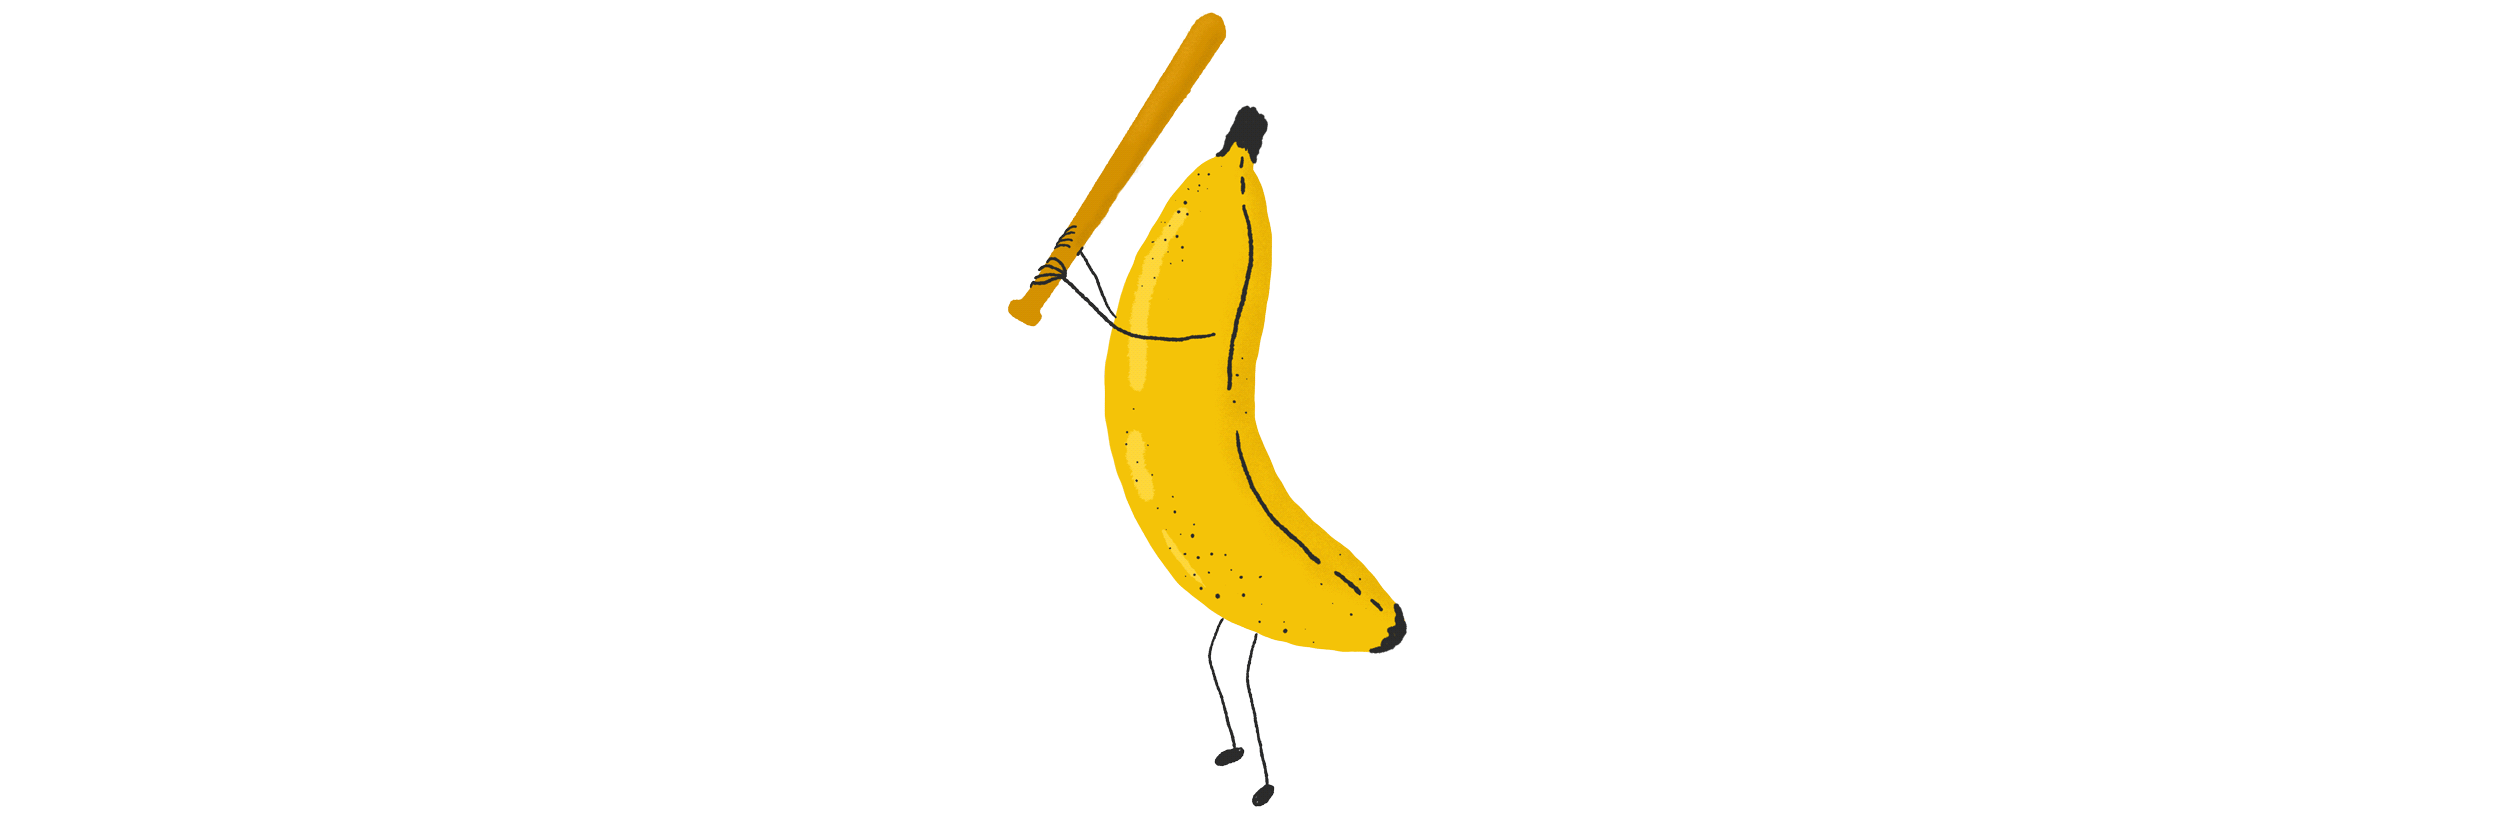 banana_swinging.gif